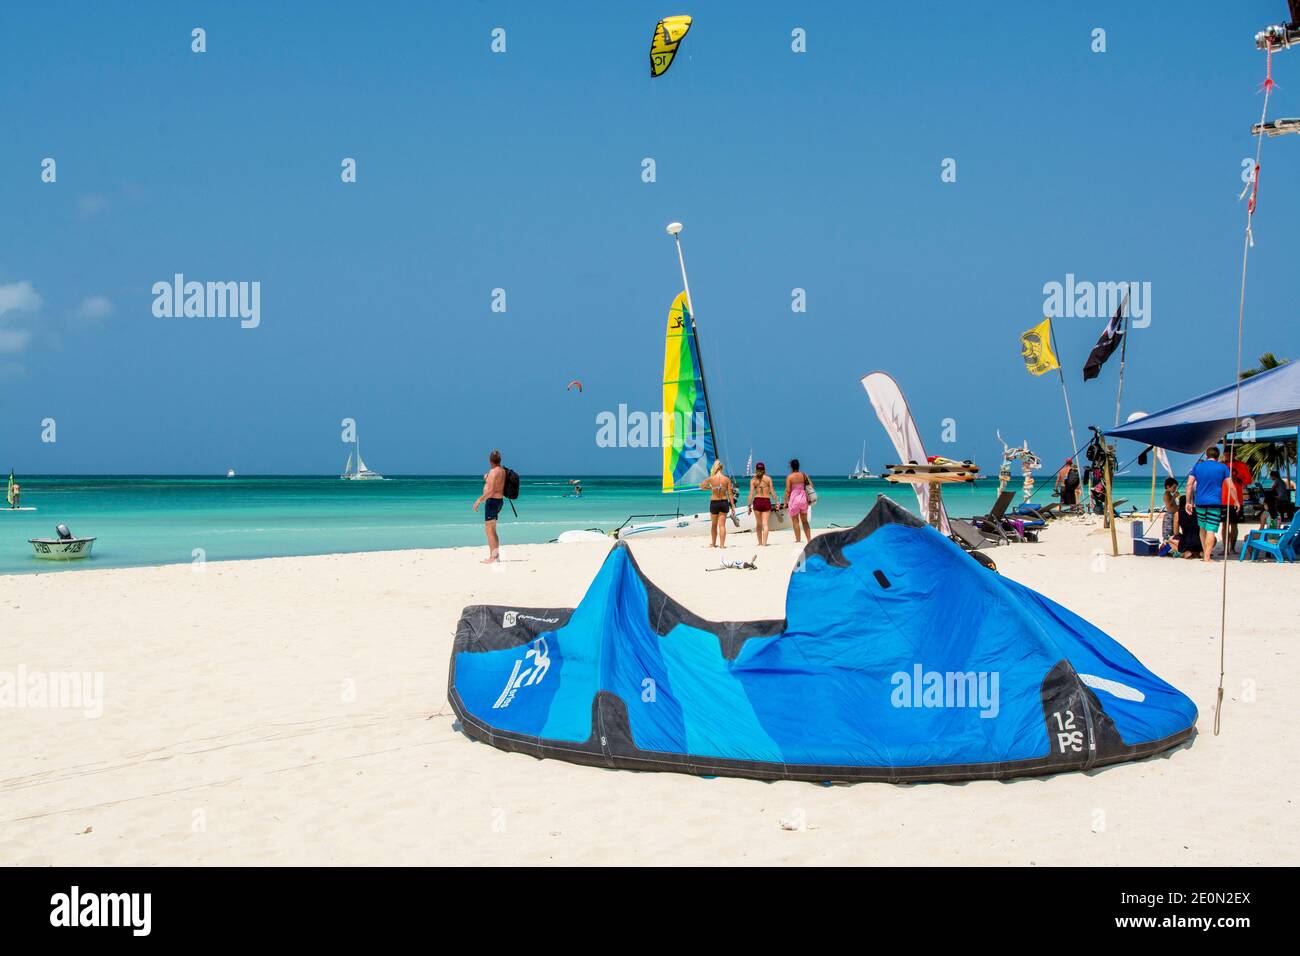 Windsurfing kitesurfing kiteboarding on Hadicurari Beach, Aruba. Stock Photo